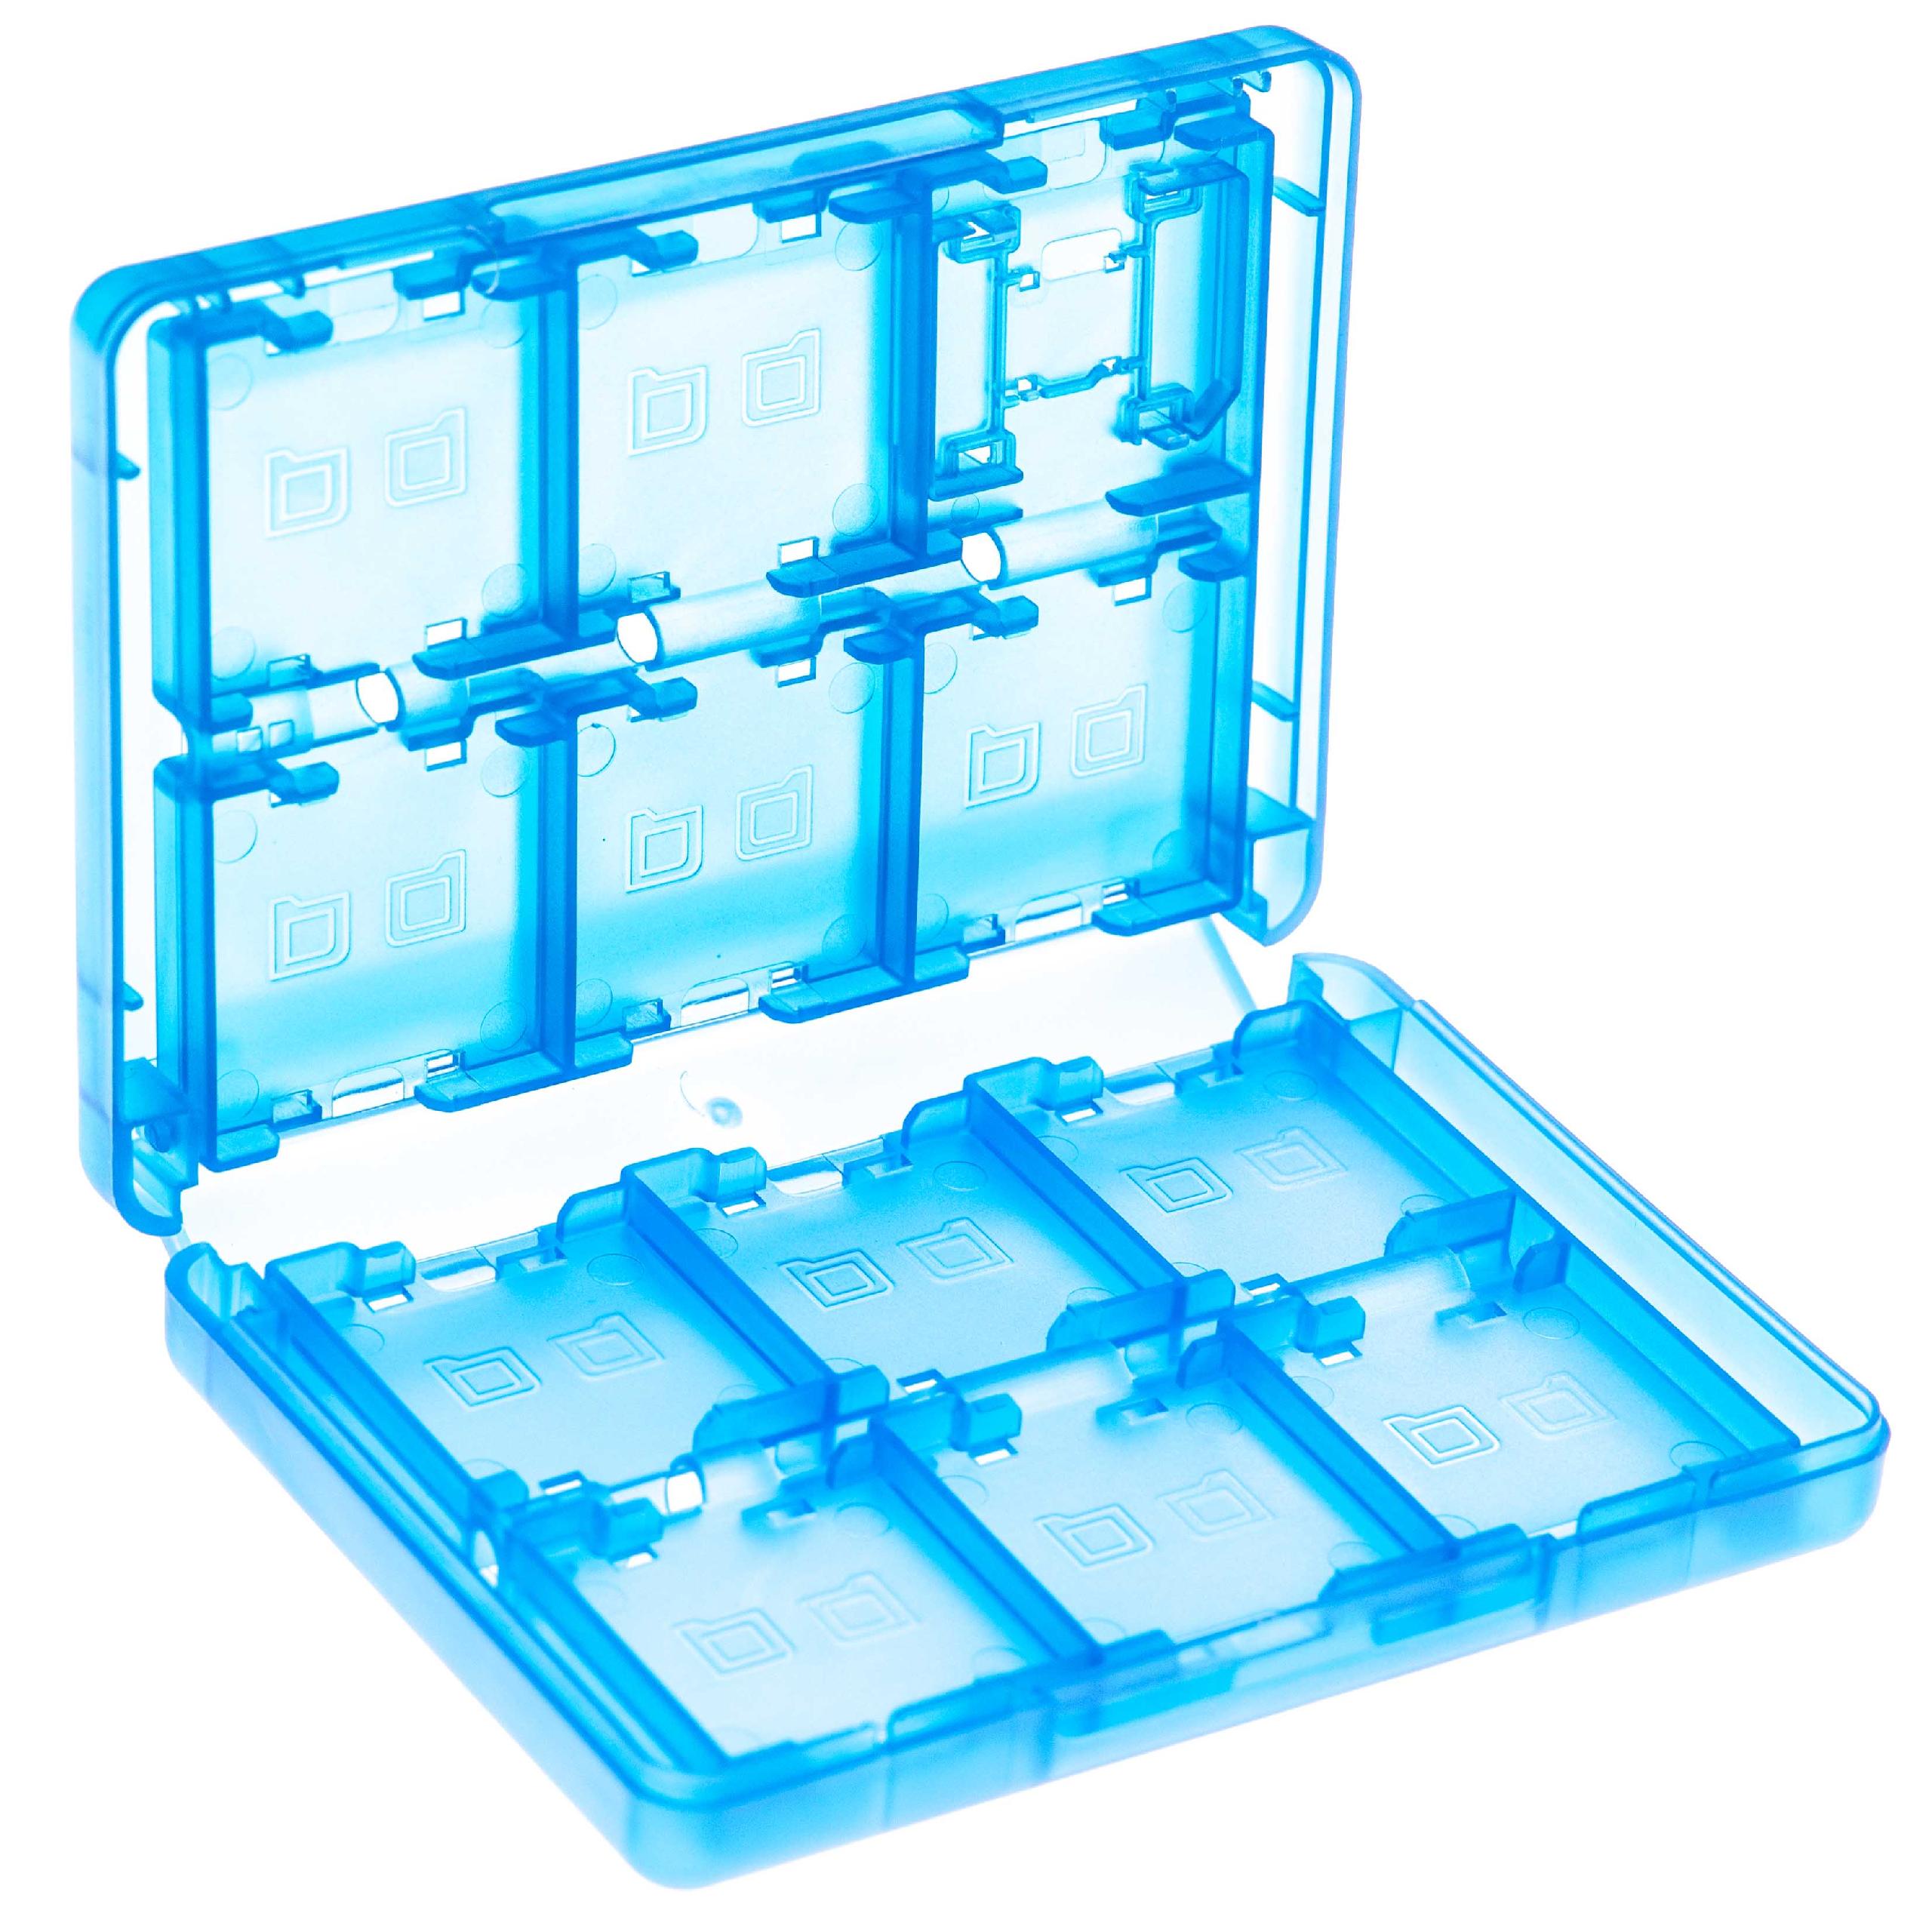 Etui für Konsolenspiele und Speicherkarten passend für Nintendo 3DS - Case, Kunststoff, transparent / blau